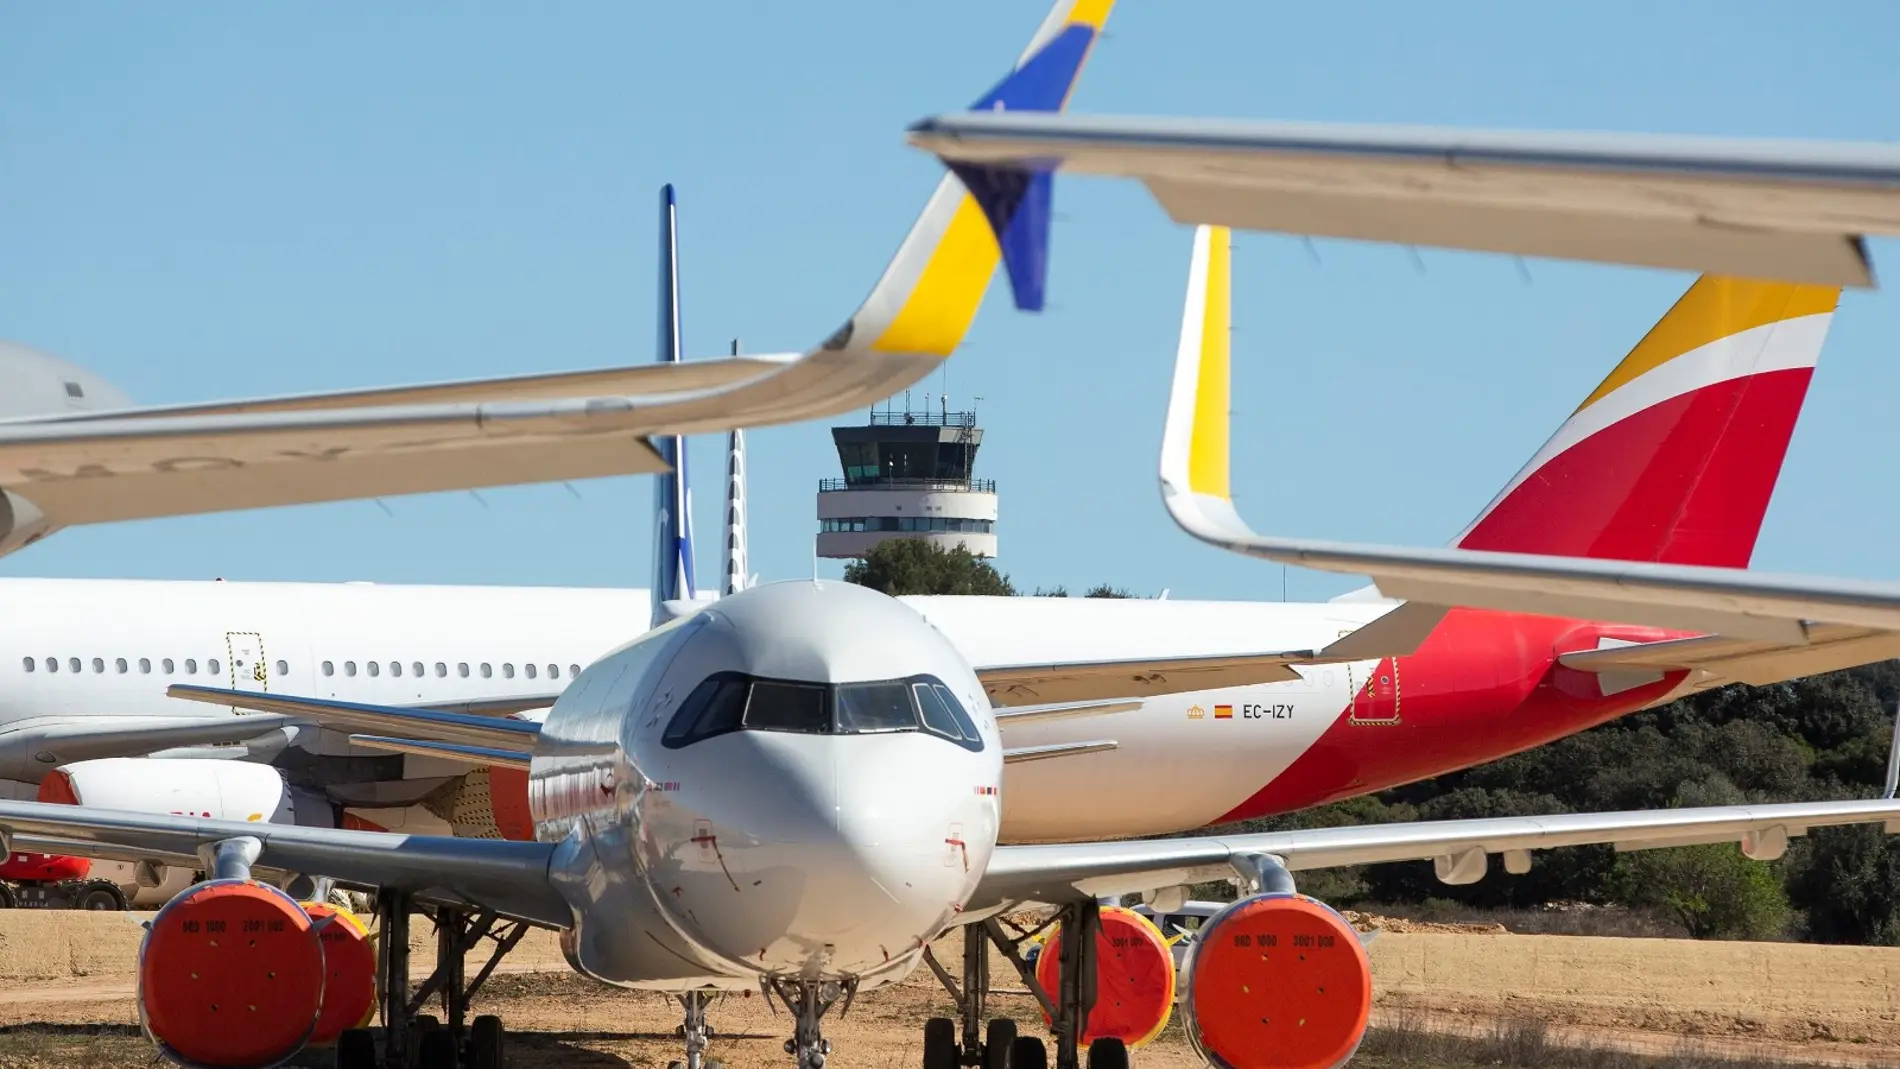 Comet Ingeniería abrirá una sede en el aeropuerto de Castellón para el diseño, producción y certificación de componentes aeroespaciales